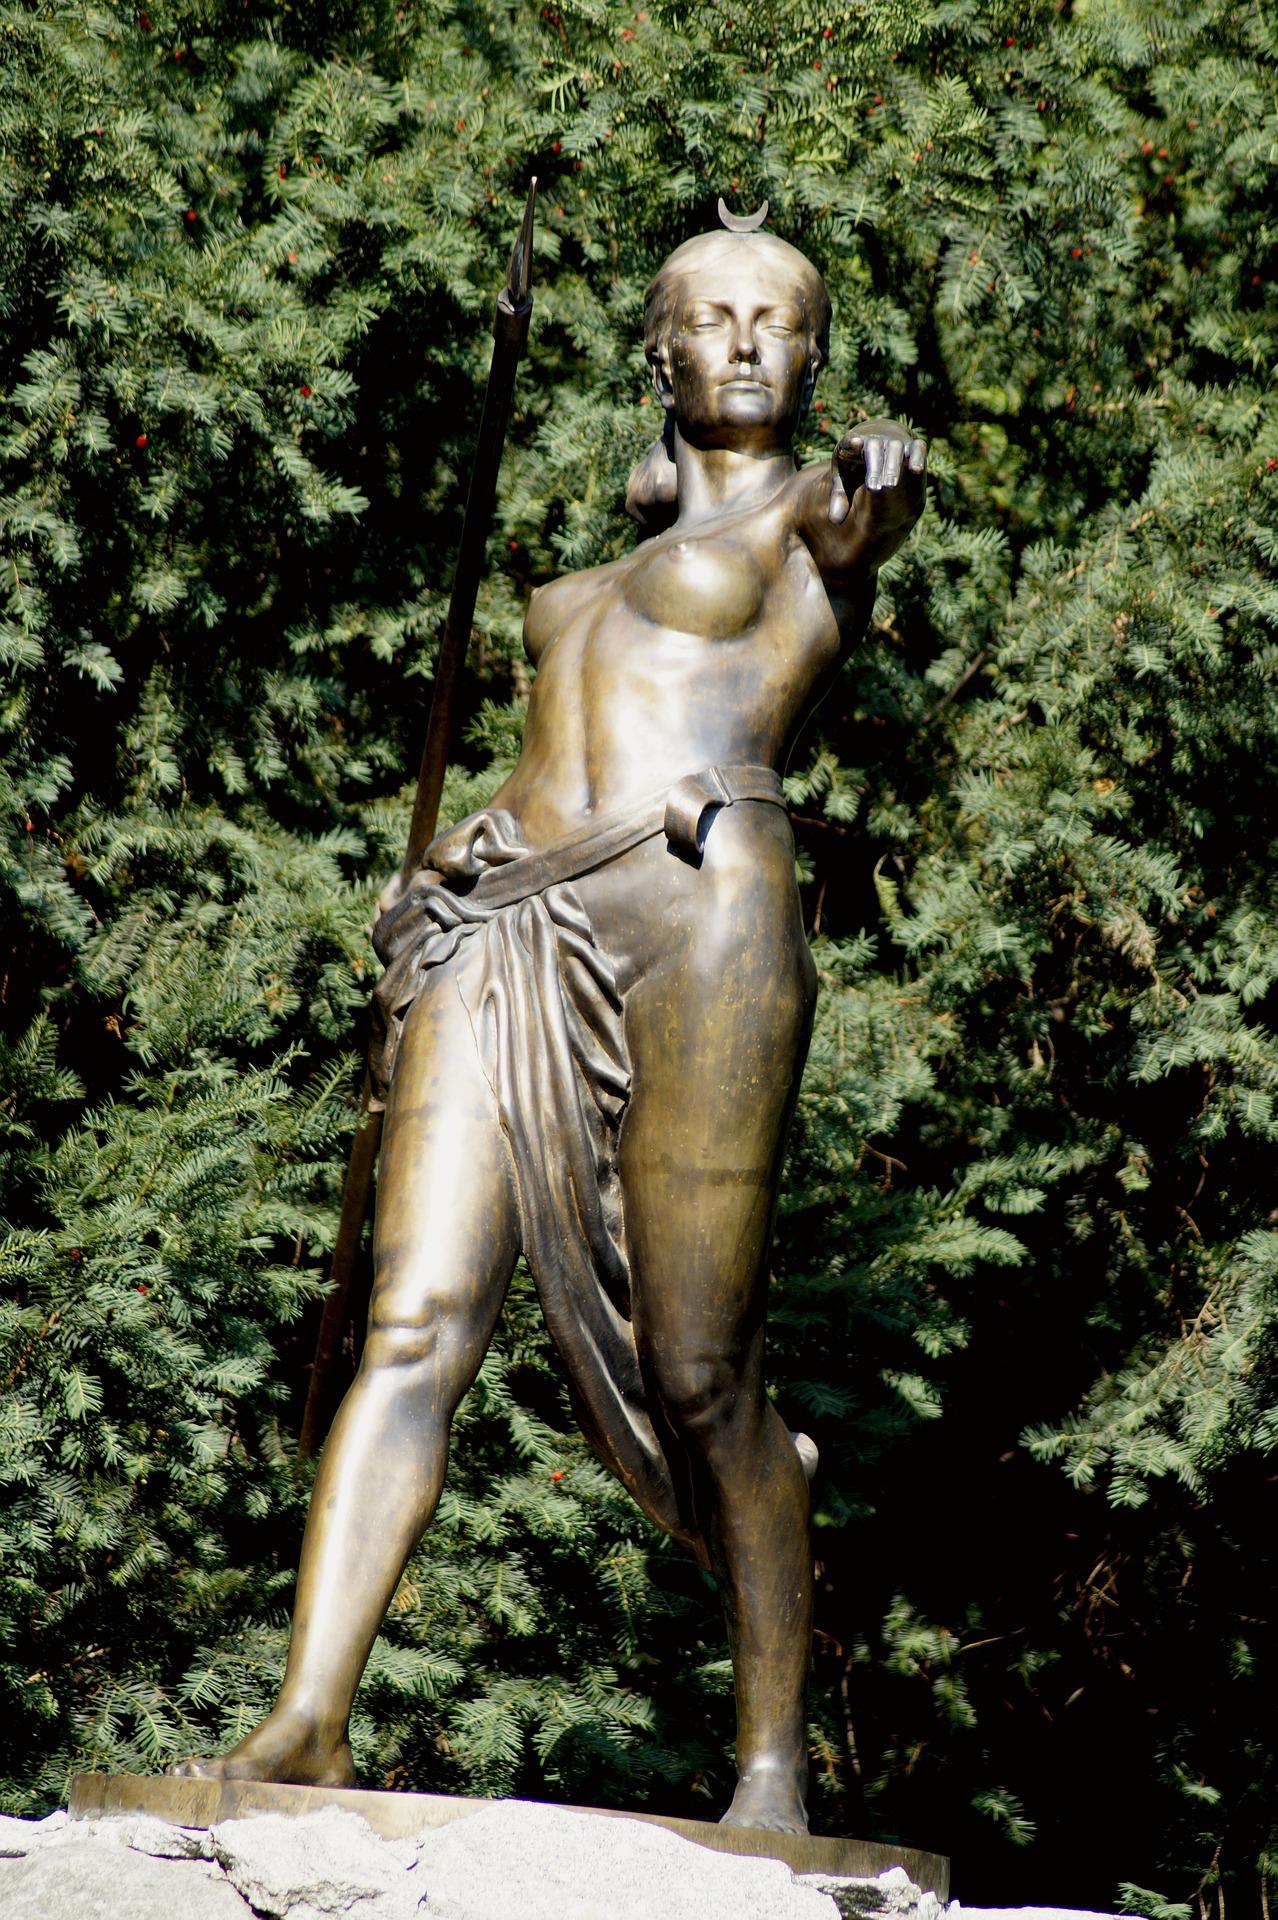 Dans un jardin, statue de bronze de la déesse de la lune, femme chasseuse et guerrière. Nue, de face, un pagne enserrant sa taille, armée d'une lance placée dans son dos, elle pointe du doigt le spectateur en contre-plongée, dans une position de défi. 